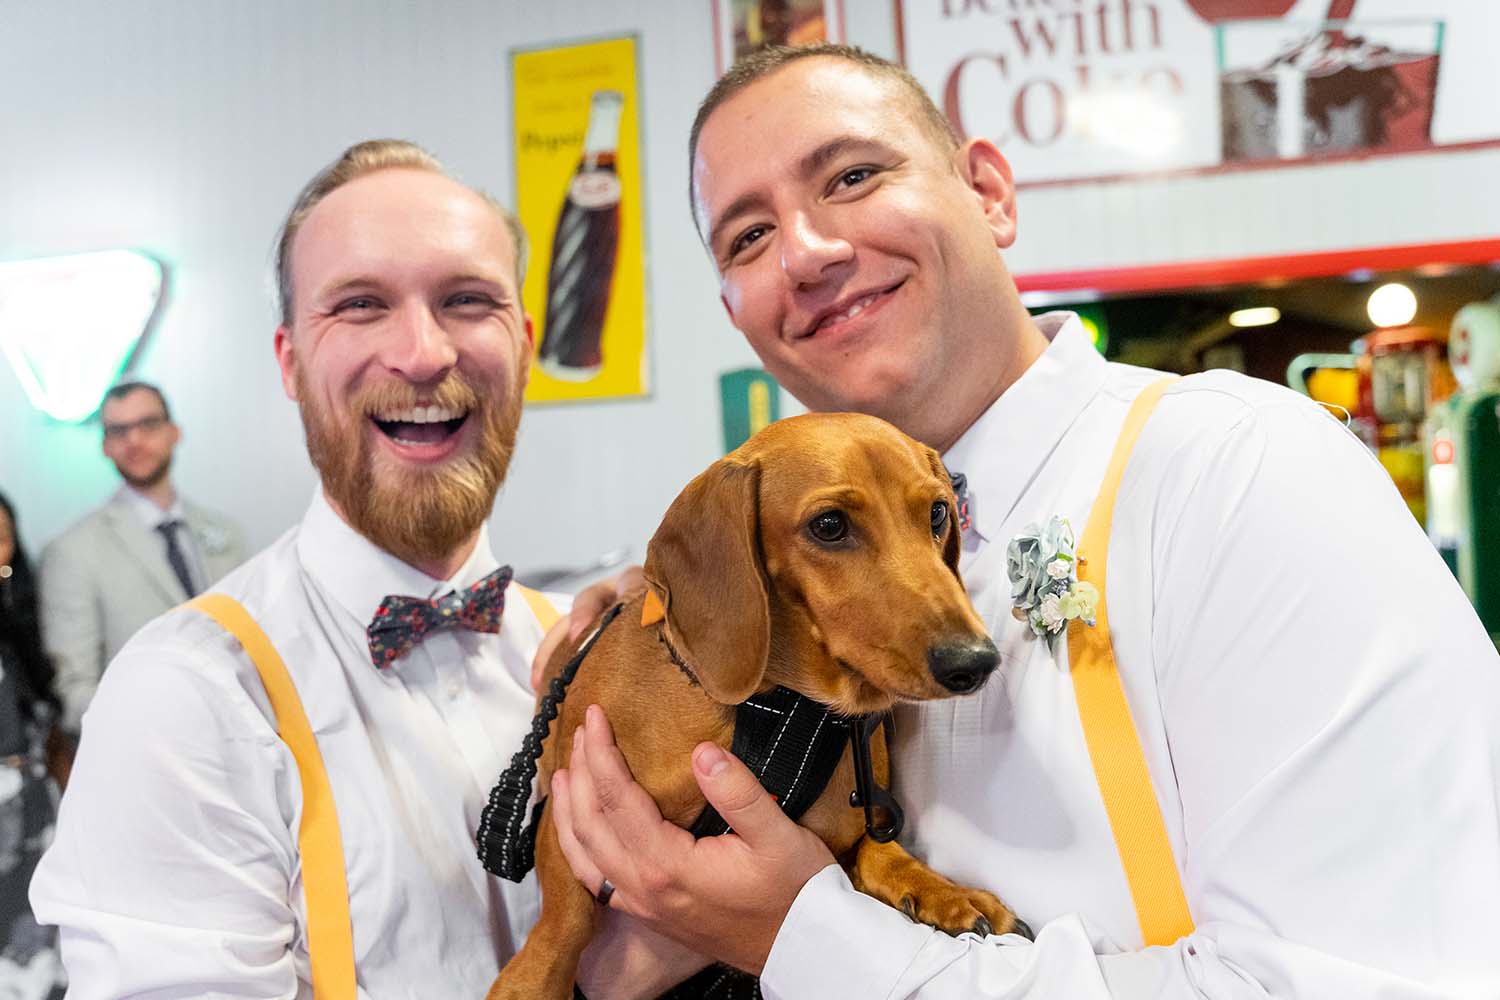 Wedding Photography - Groomsmen with dog